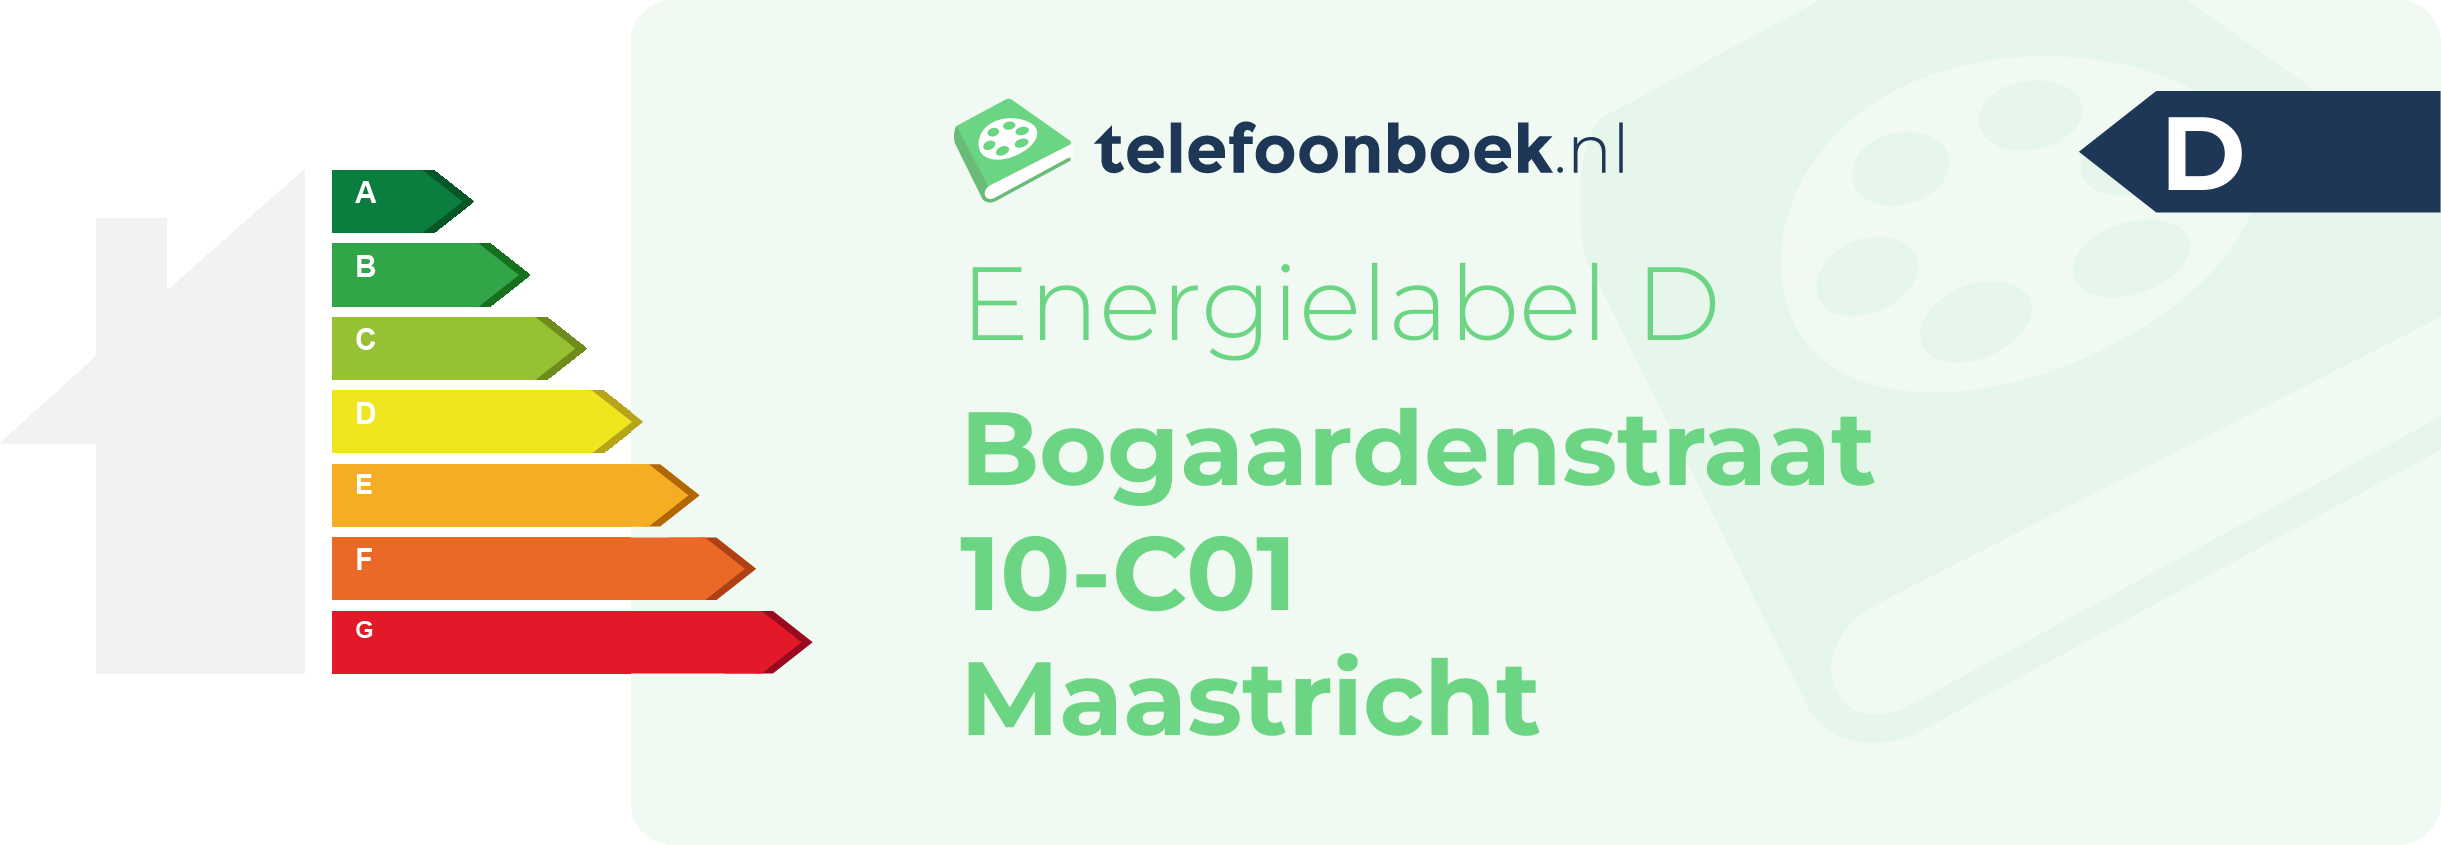 Energielabel Bogaardenstraat 10-C01 Maastricht